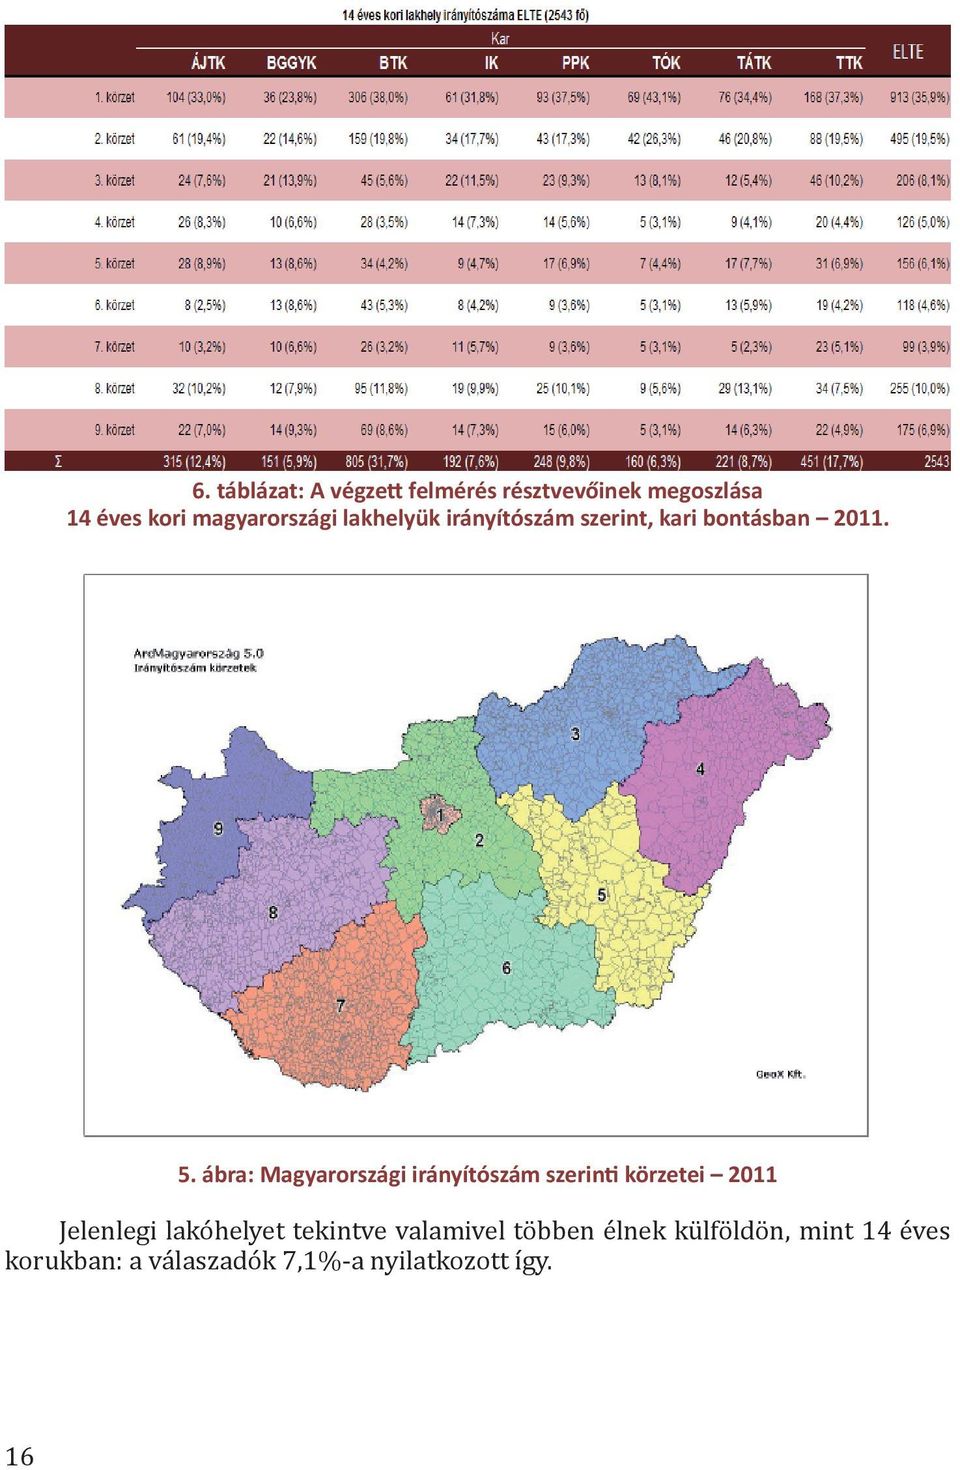 ábra: Magyarországi irányítószám szerin körzetei 2011 Jelenlegi lakóhelyet